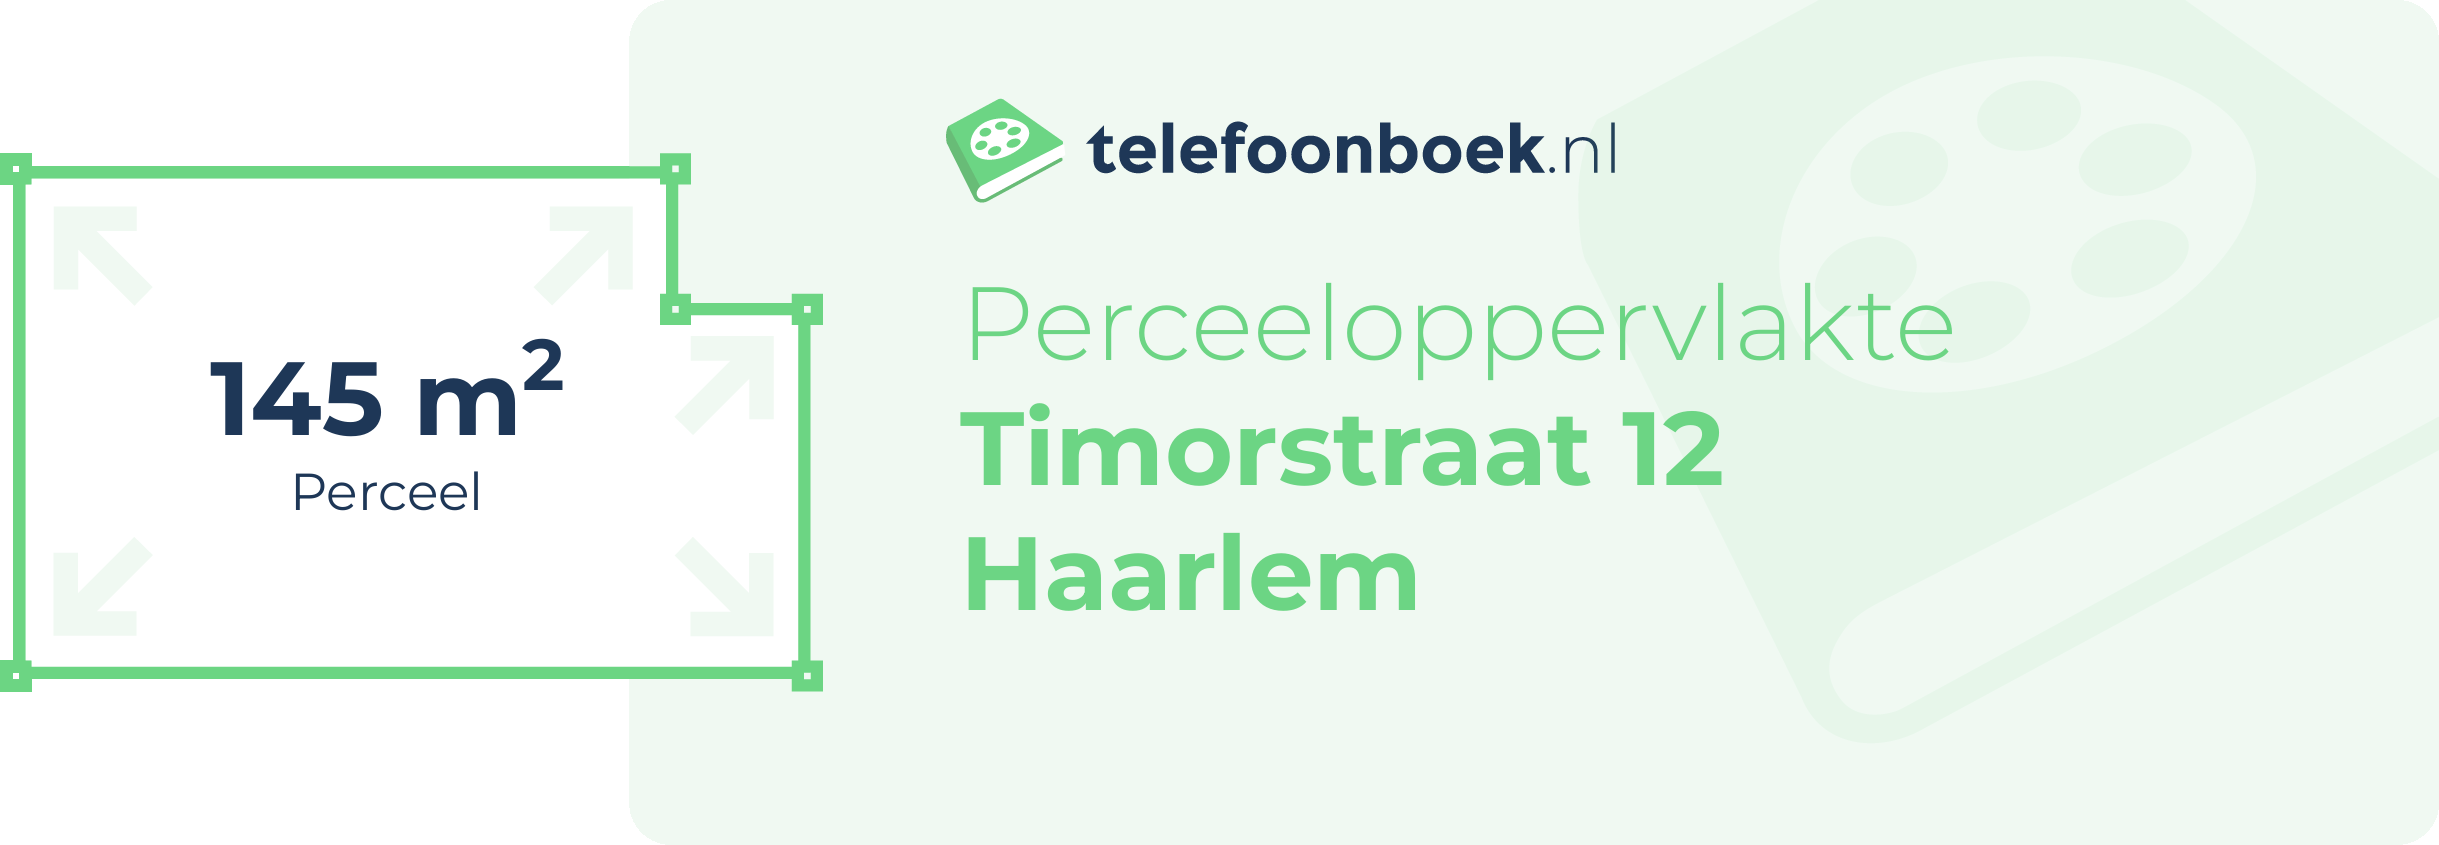 Perceeloppervlakte Timorstraat 12 Haarlem